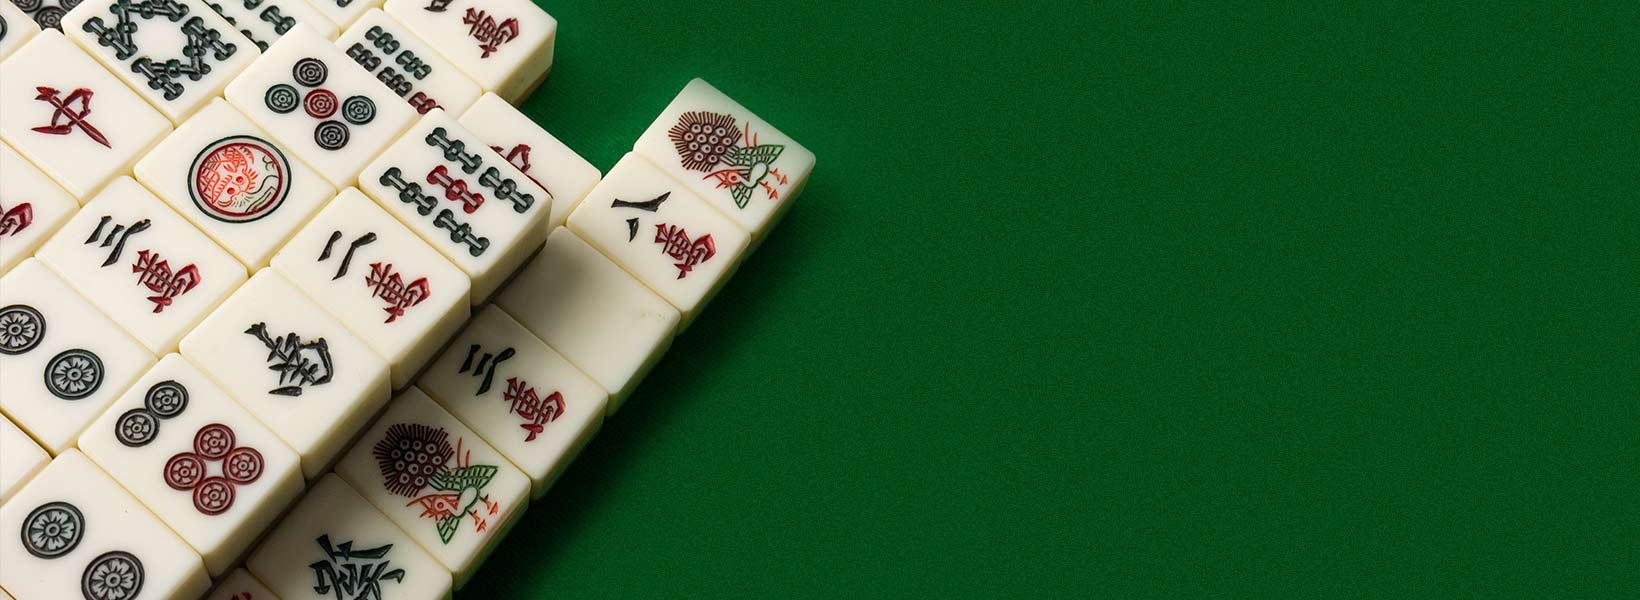 Reguli Mahjong